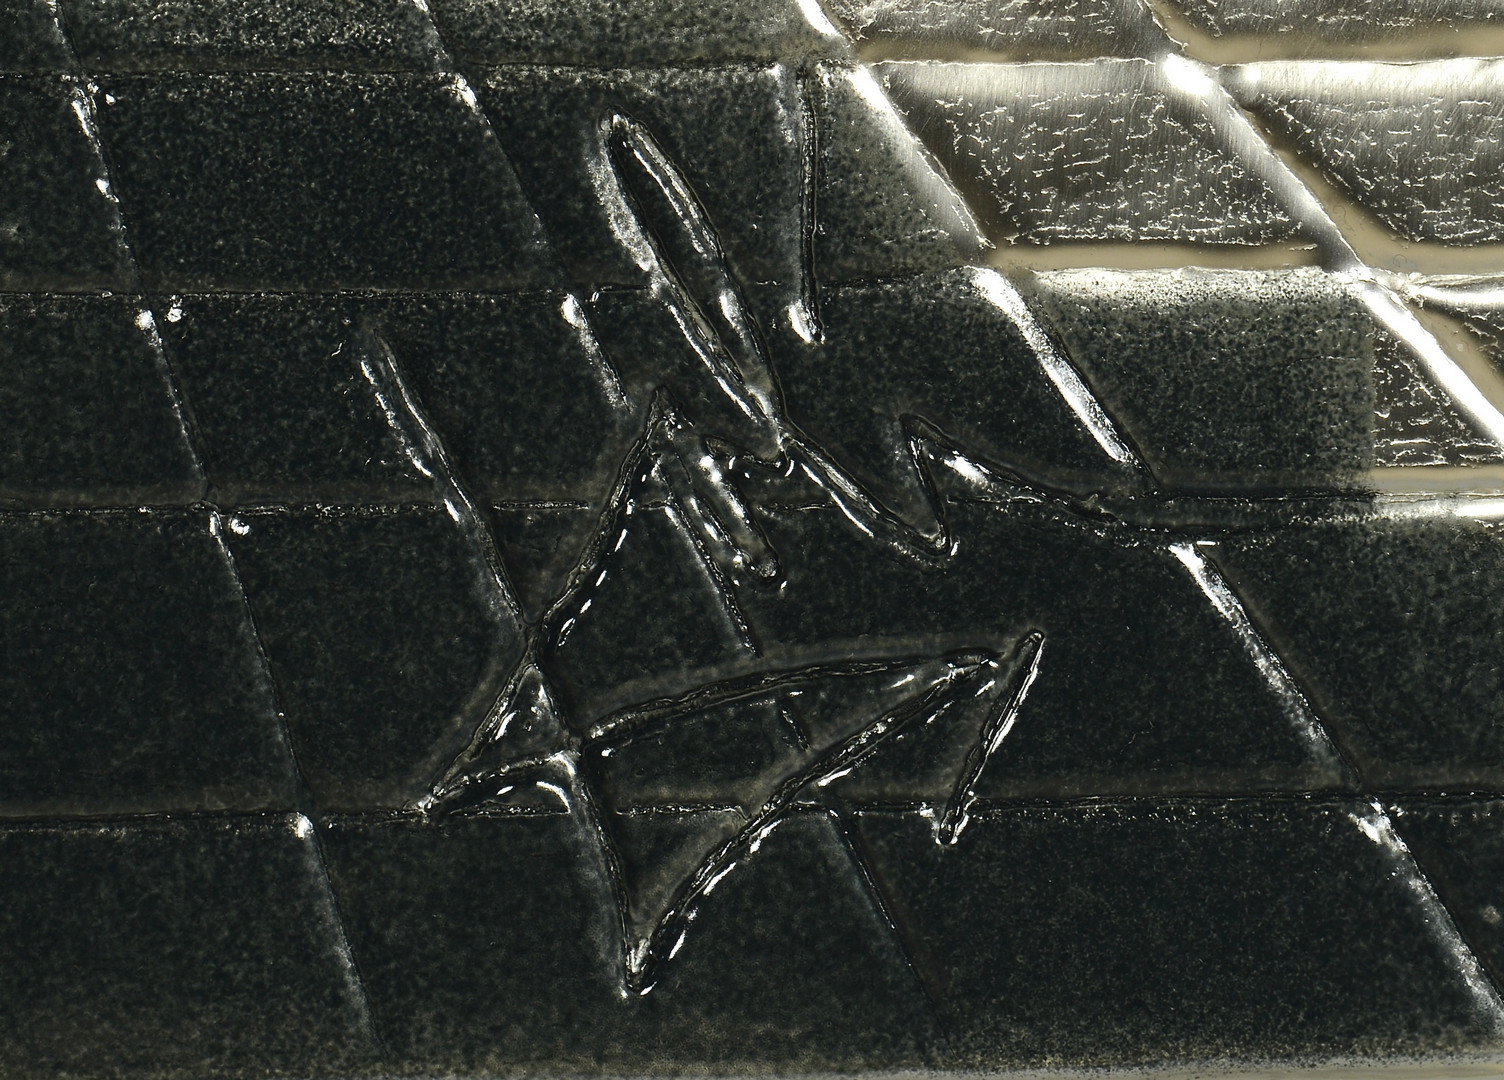 Lot 170: Dali Lincoln in Dalivision Silver Bas Relief